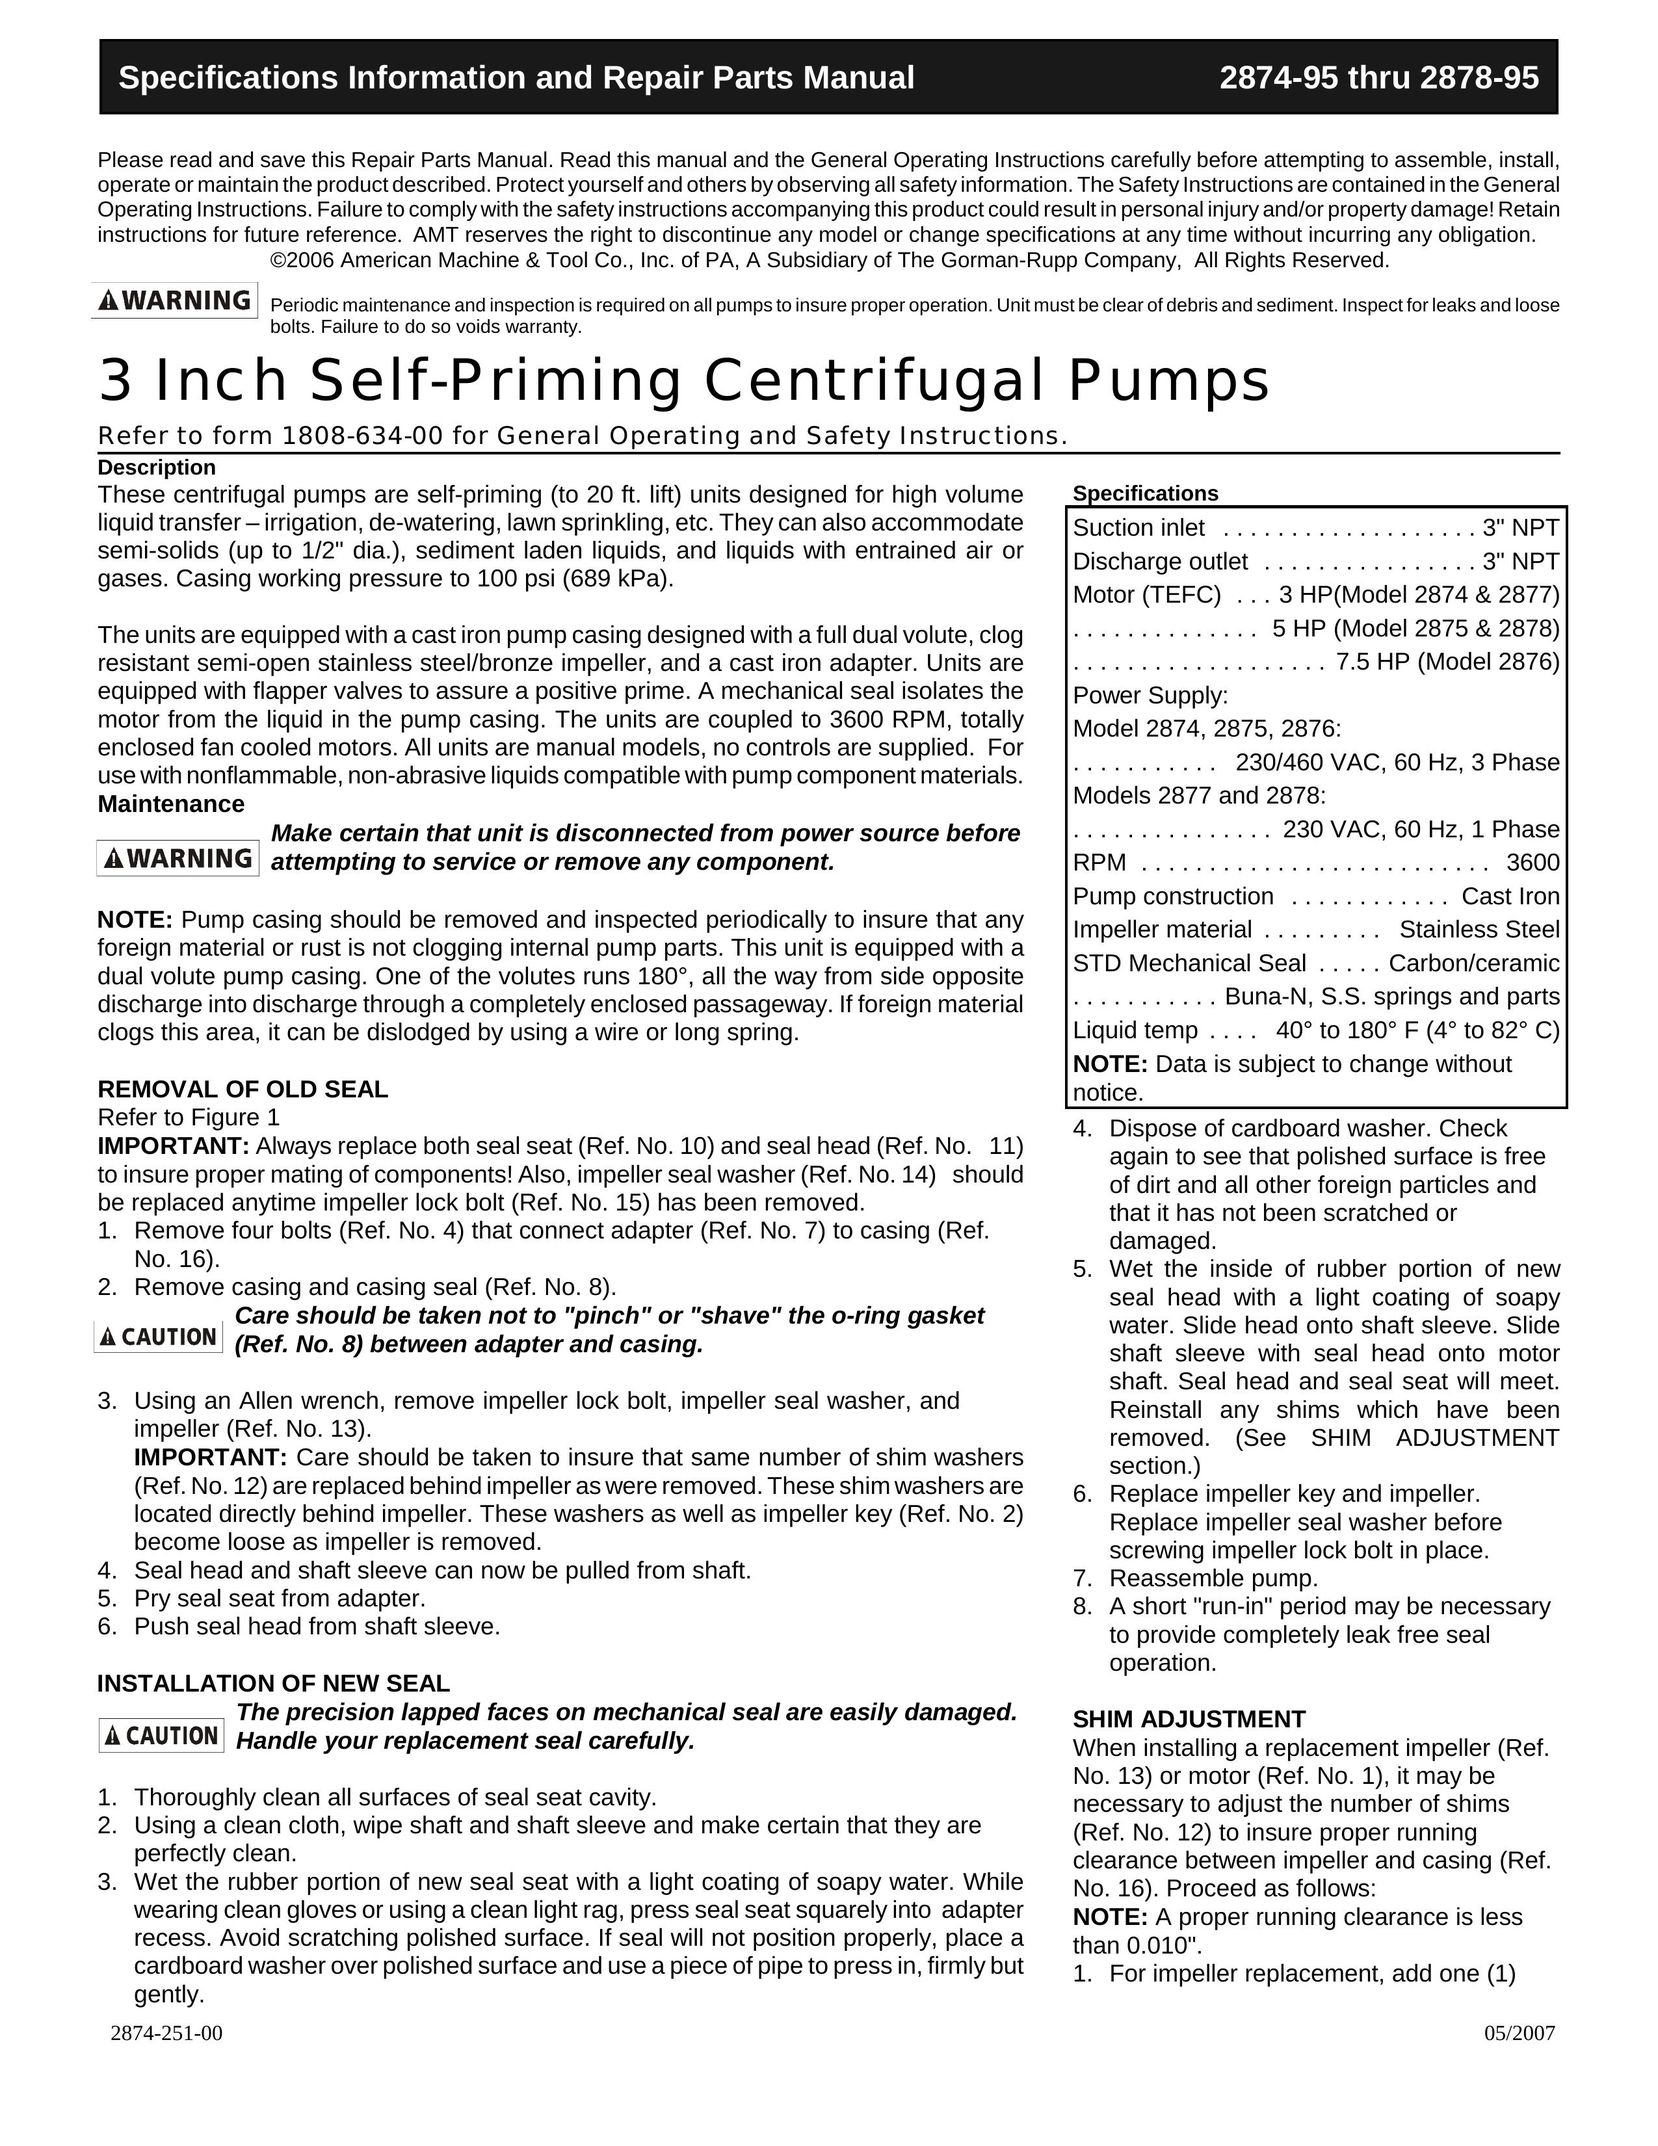 HP (Hewlett-Packard) 2877 Water Pump User Manual